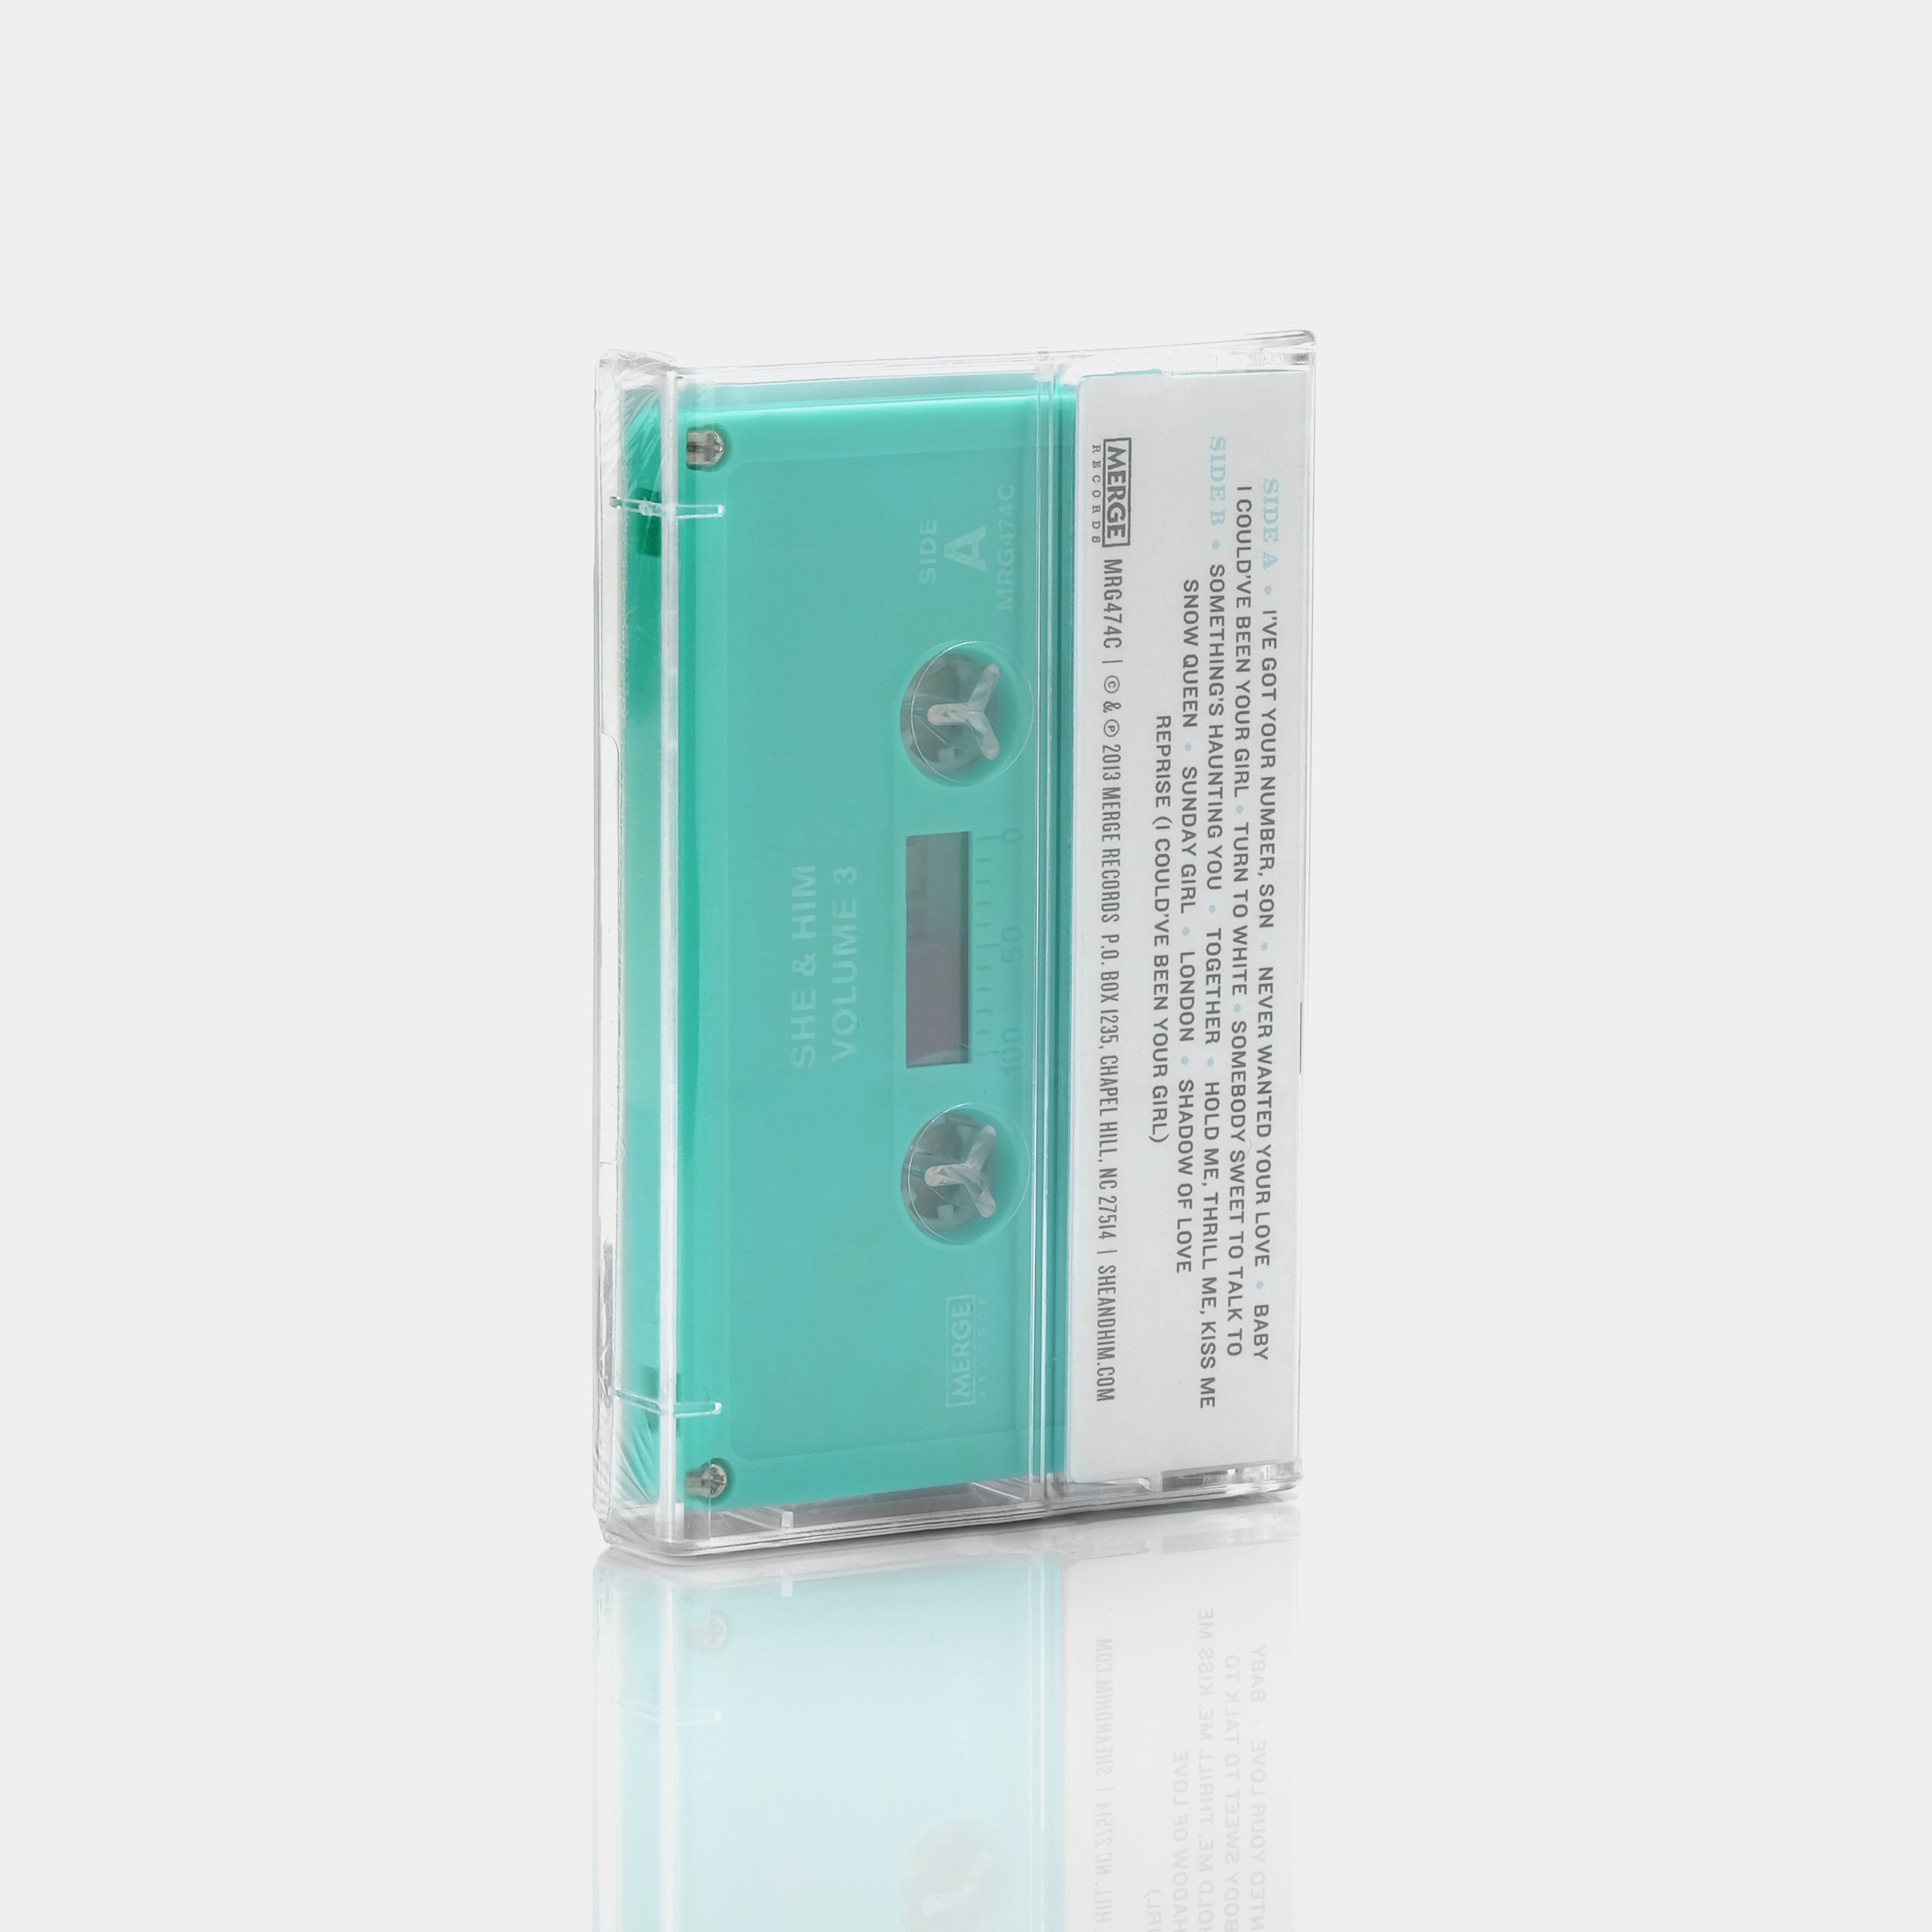 She & Him - Volume 3 Cassette Tape